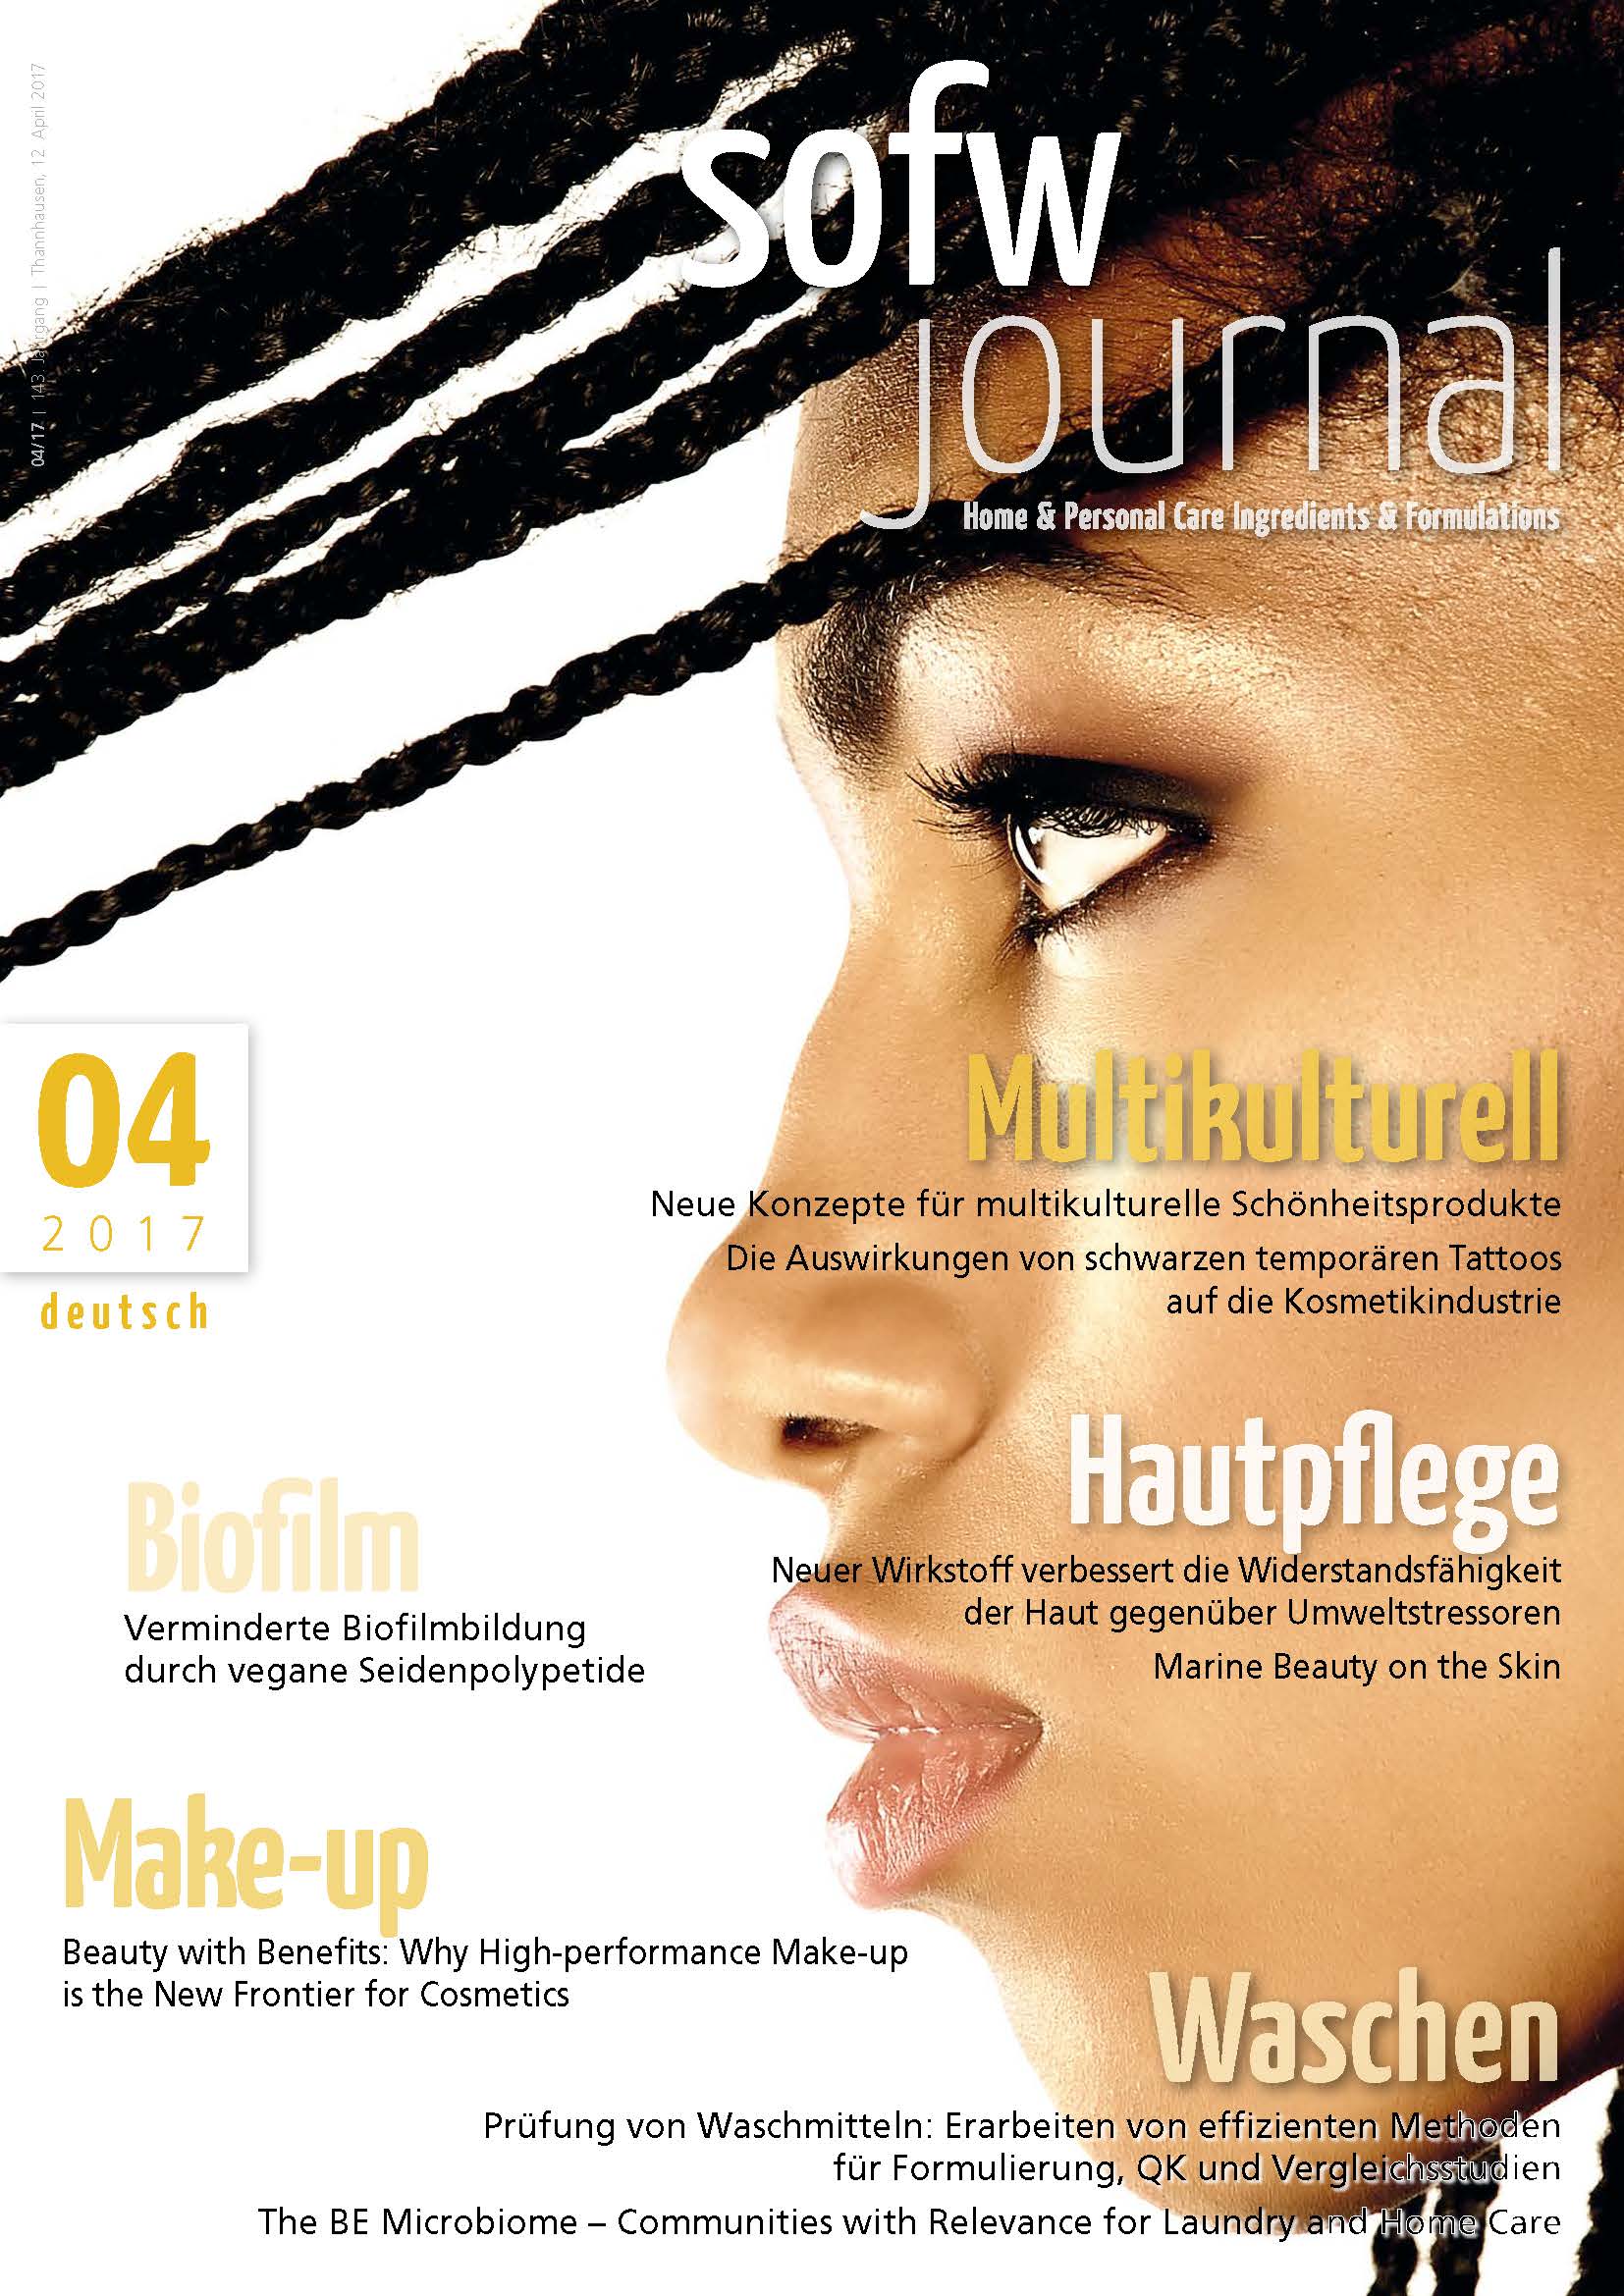 sofw journal 04-2017, Deutsch, Print 